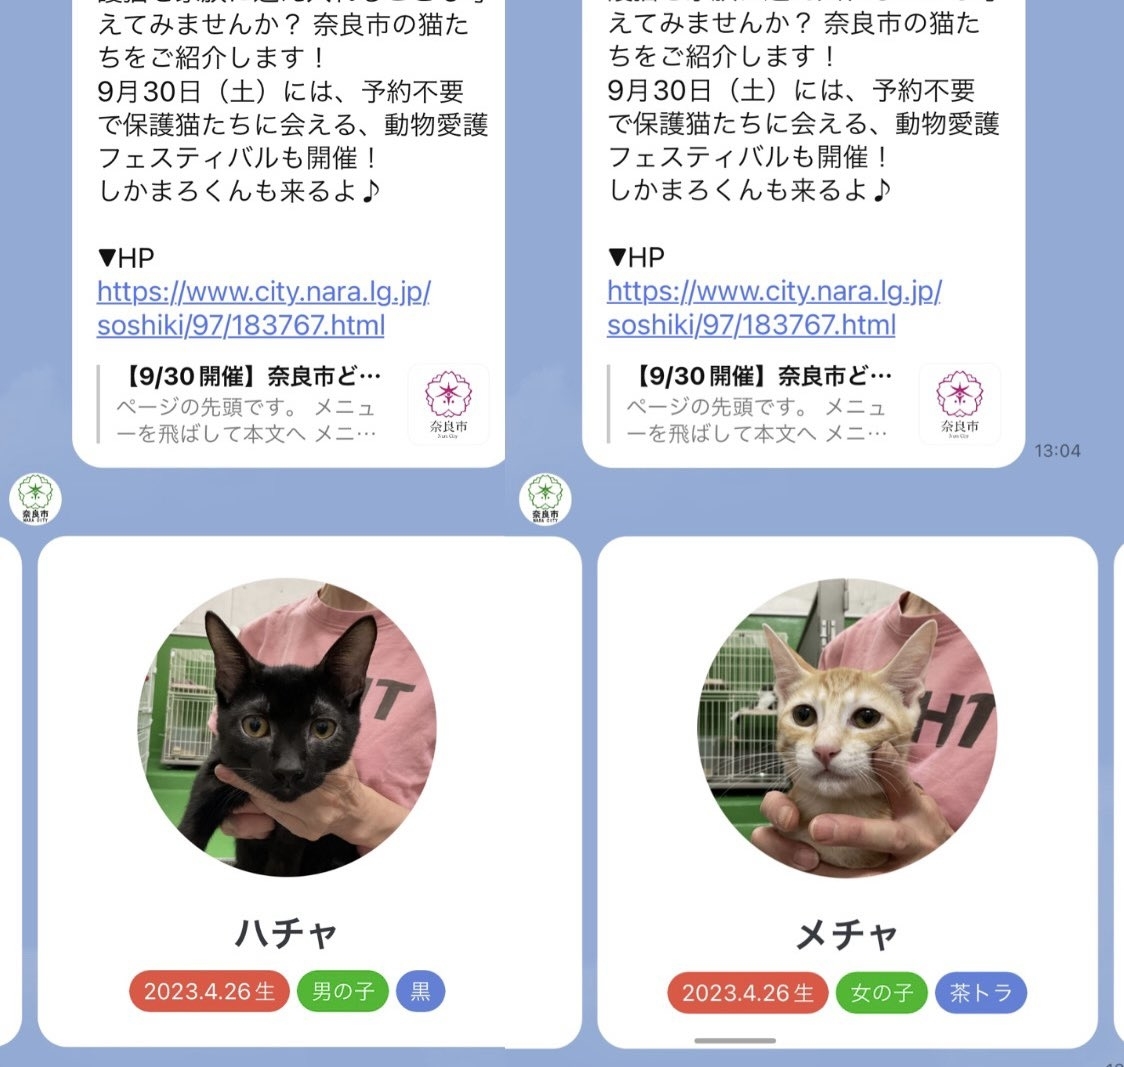 キミの名はハチャとメチャ。奈良市公式LINEが発信する保護猫の